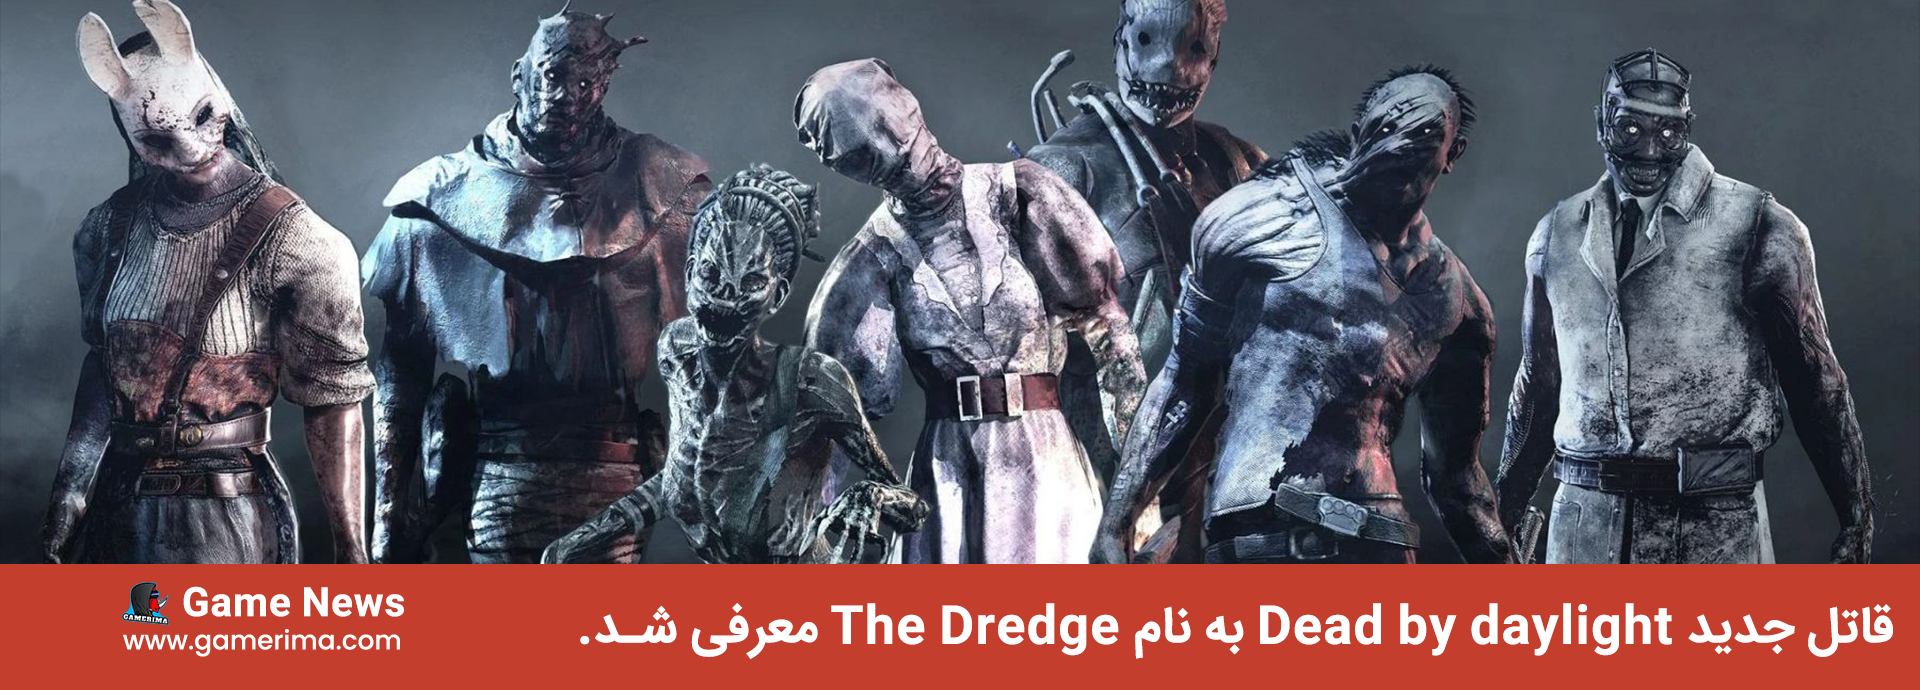 قاتل جدید Dead by daylight به نام The Dredge معرفی شد.(۲۰۲۲)